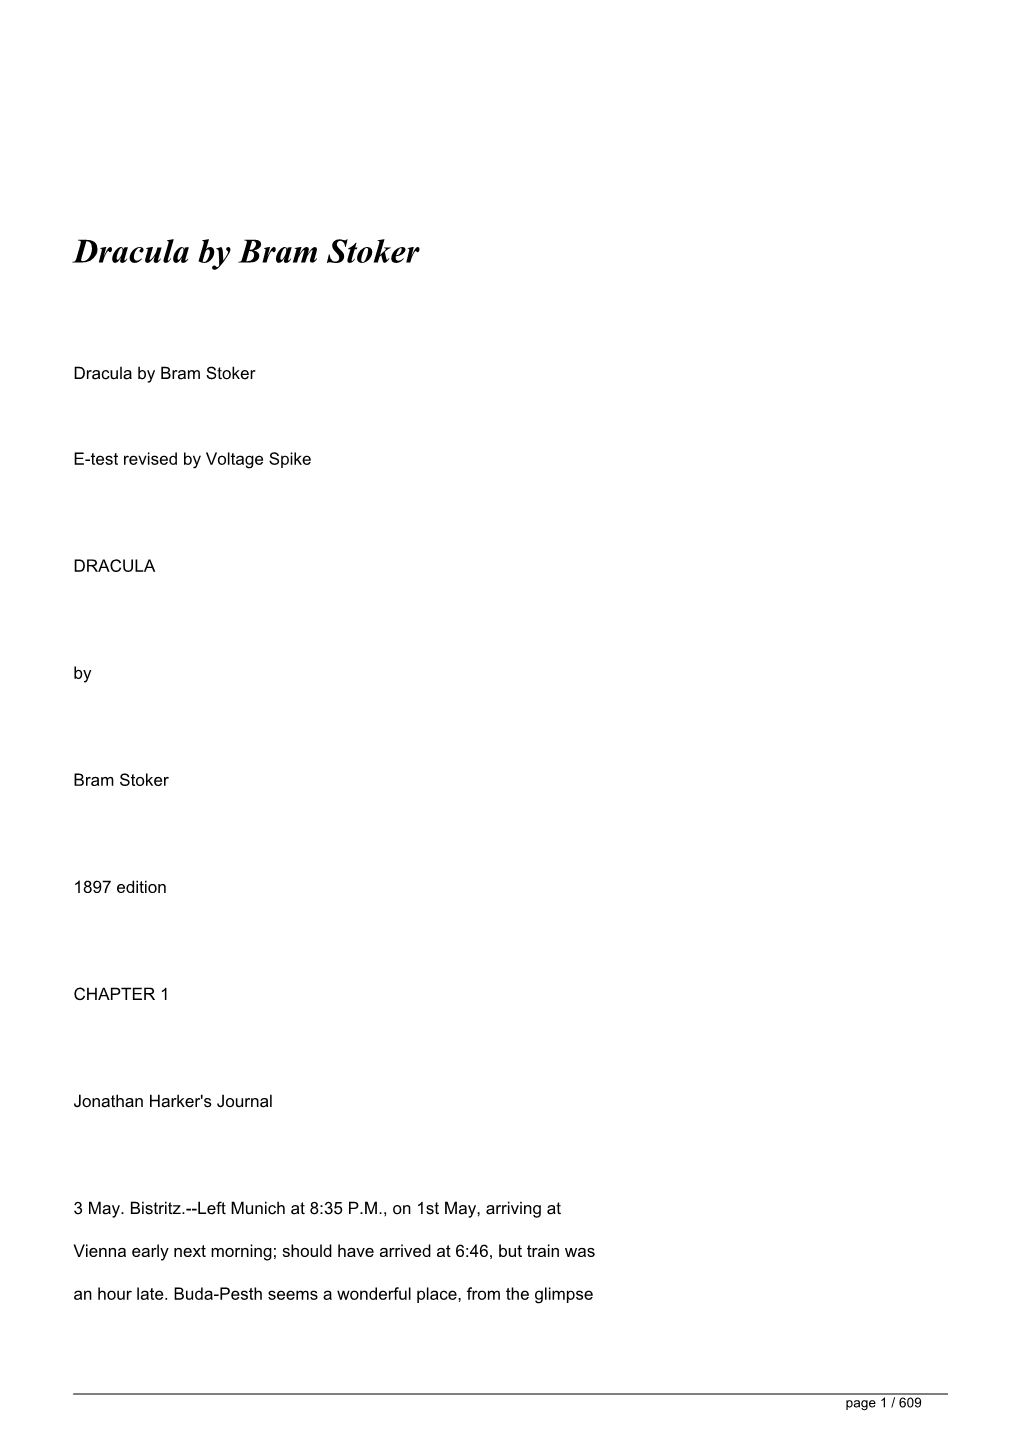 Dracula by Bram Stoker&lt;/H1&gt;